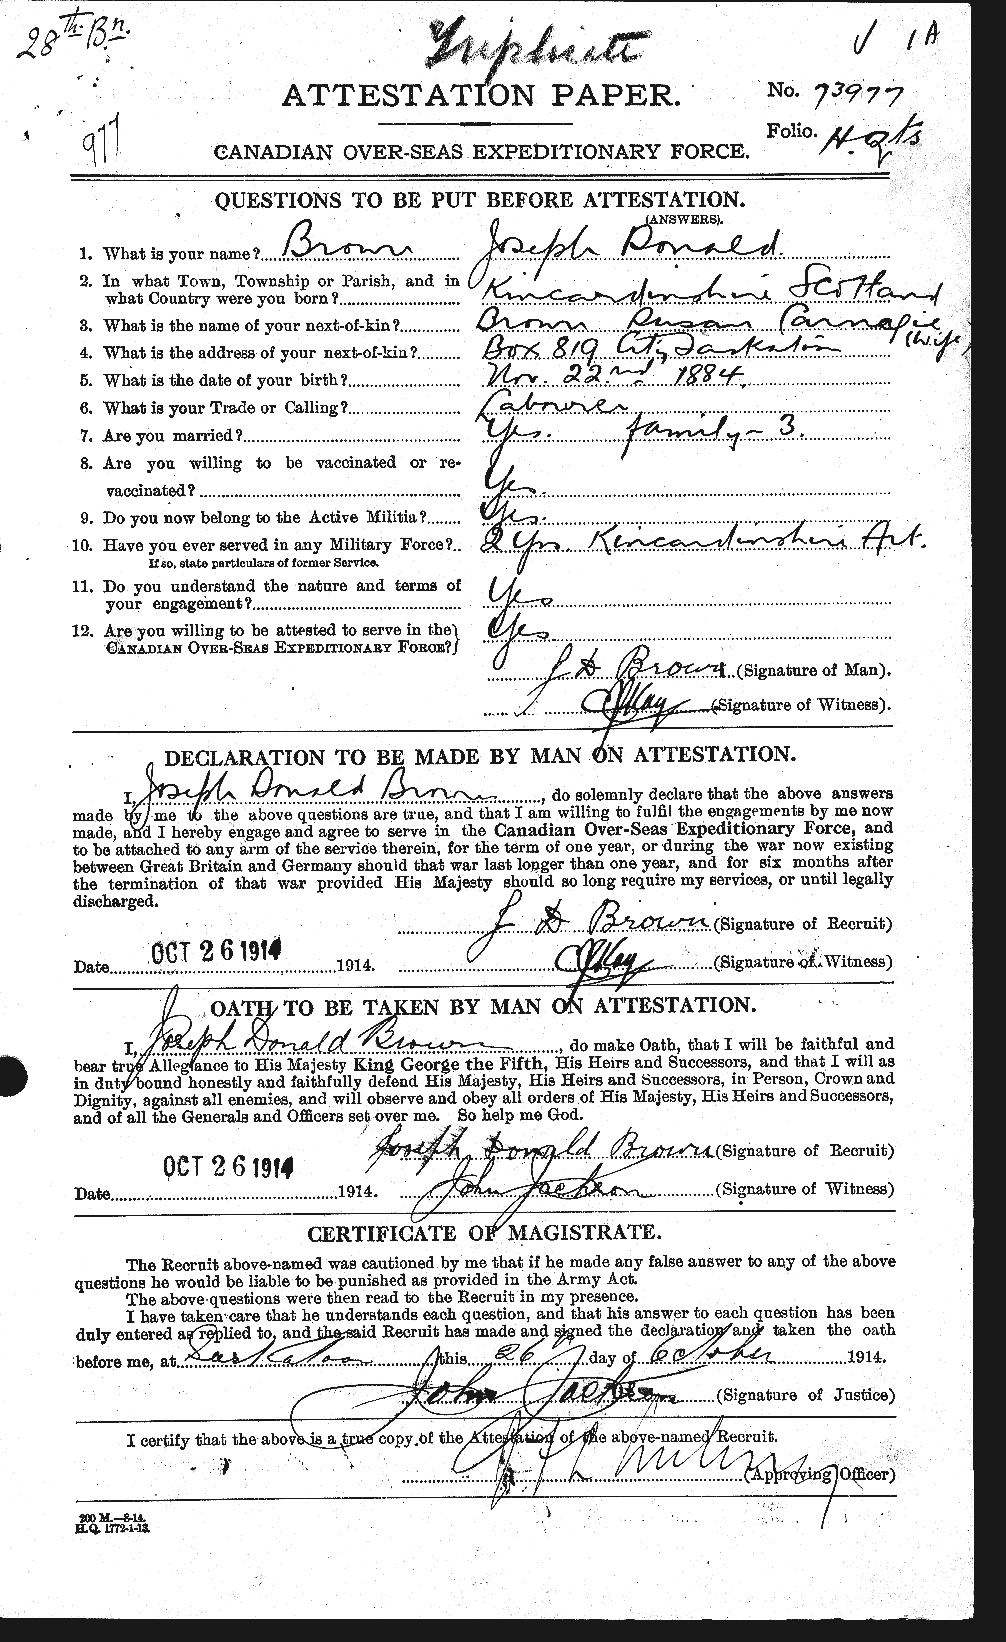 Dossiers du Personnel de la Première Guerre mondiale - CEC 265964a